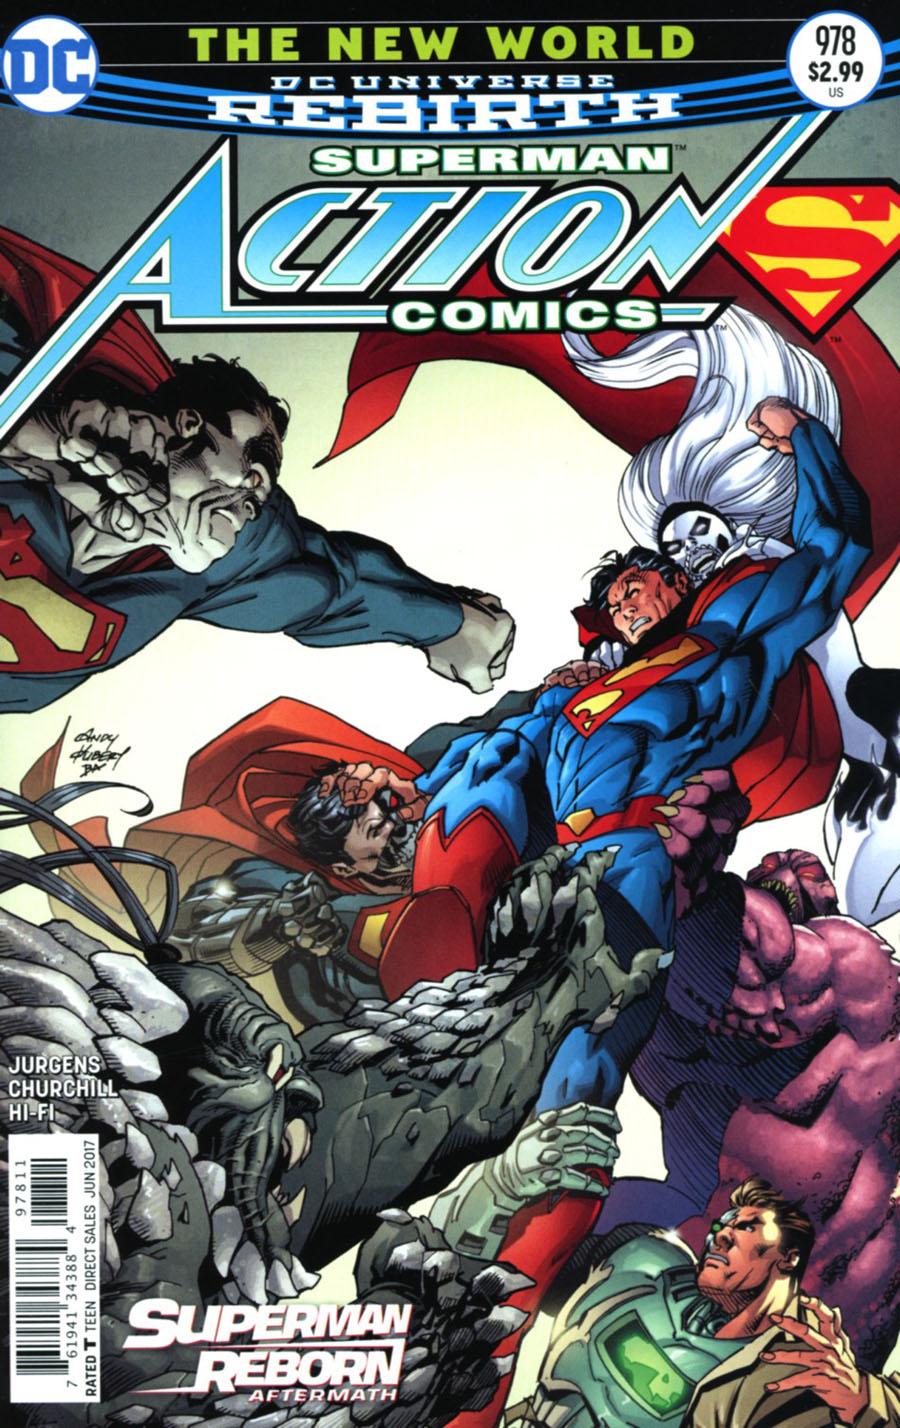 Action Comics Vol. 2 #978